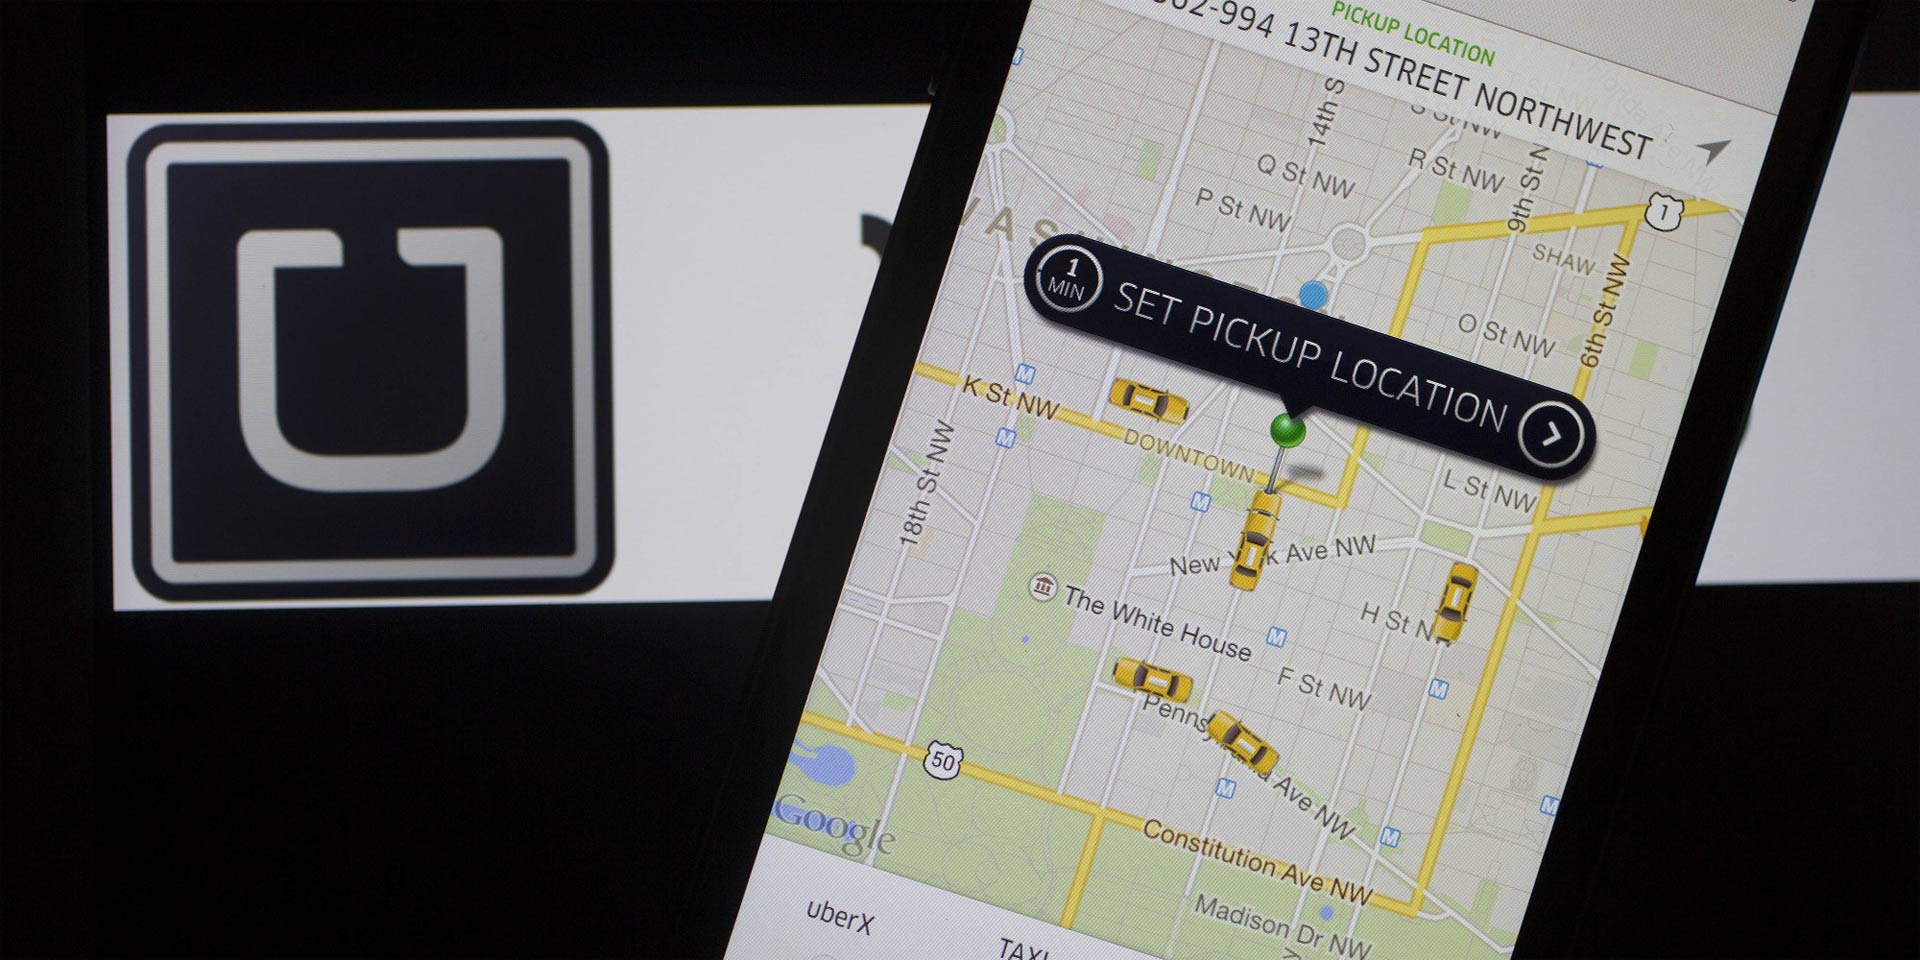 A partir de 2016, Uber también ofrecerá servicios de mensajería y paquetería en México